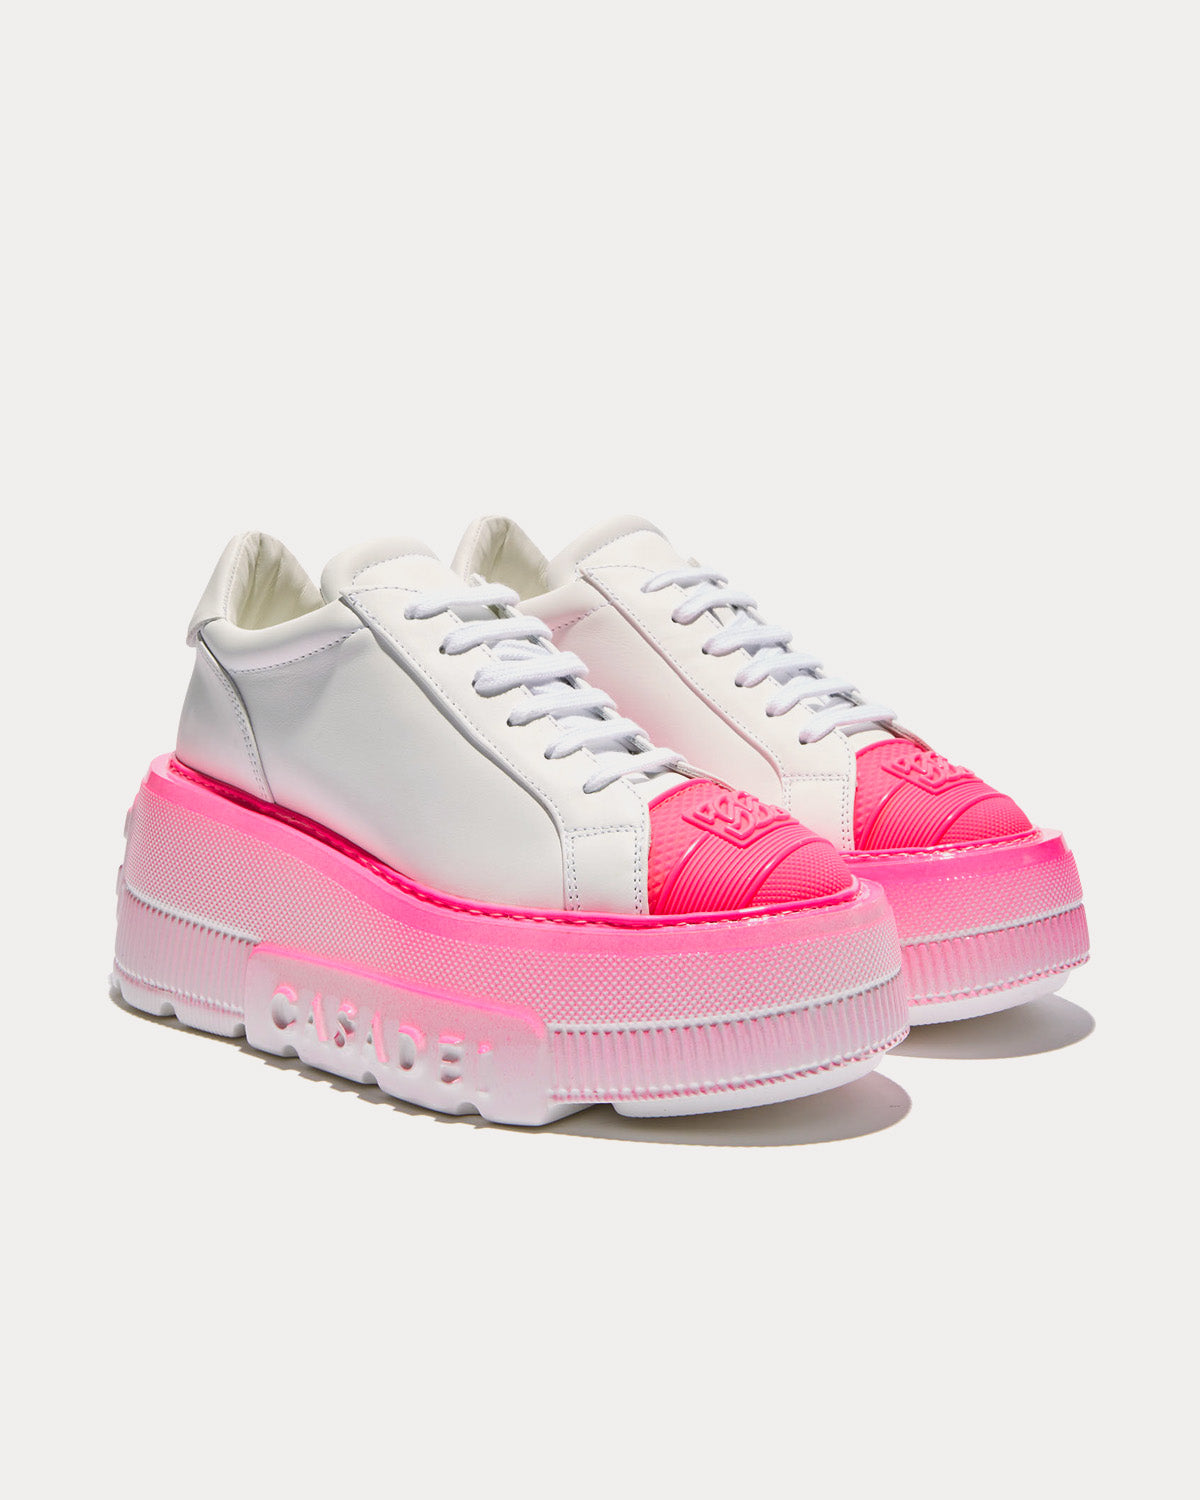 Casadei - Nexus Fluo White / Shocking Pink Low Top Sneakers